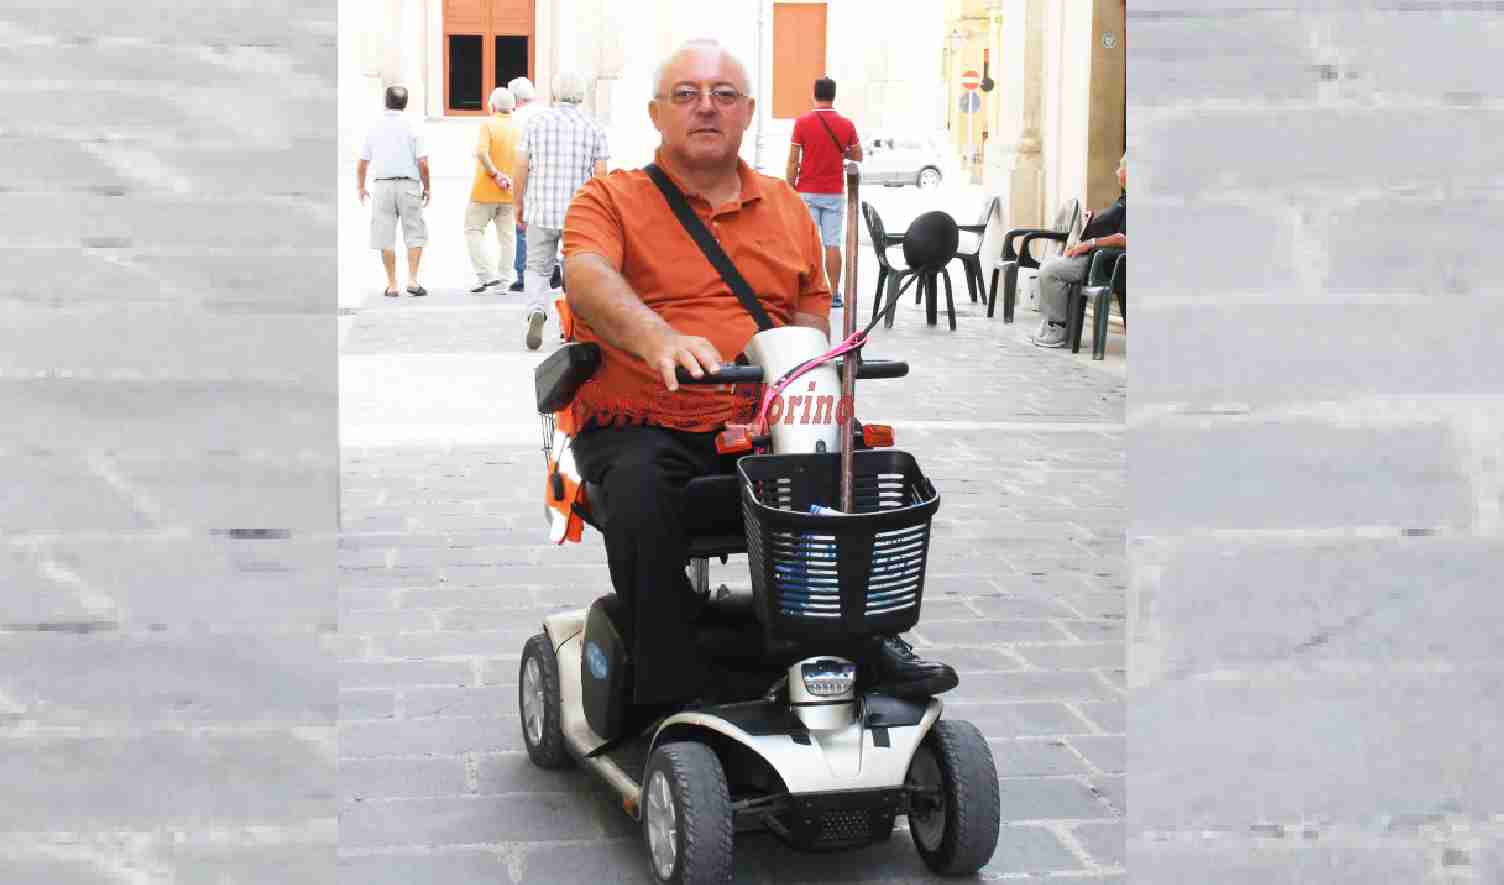 Amministrative, Carmelo Caruso: “Mi candido con Etica, il mio impegno sul tema della disabilità “